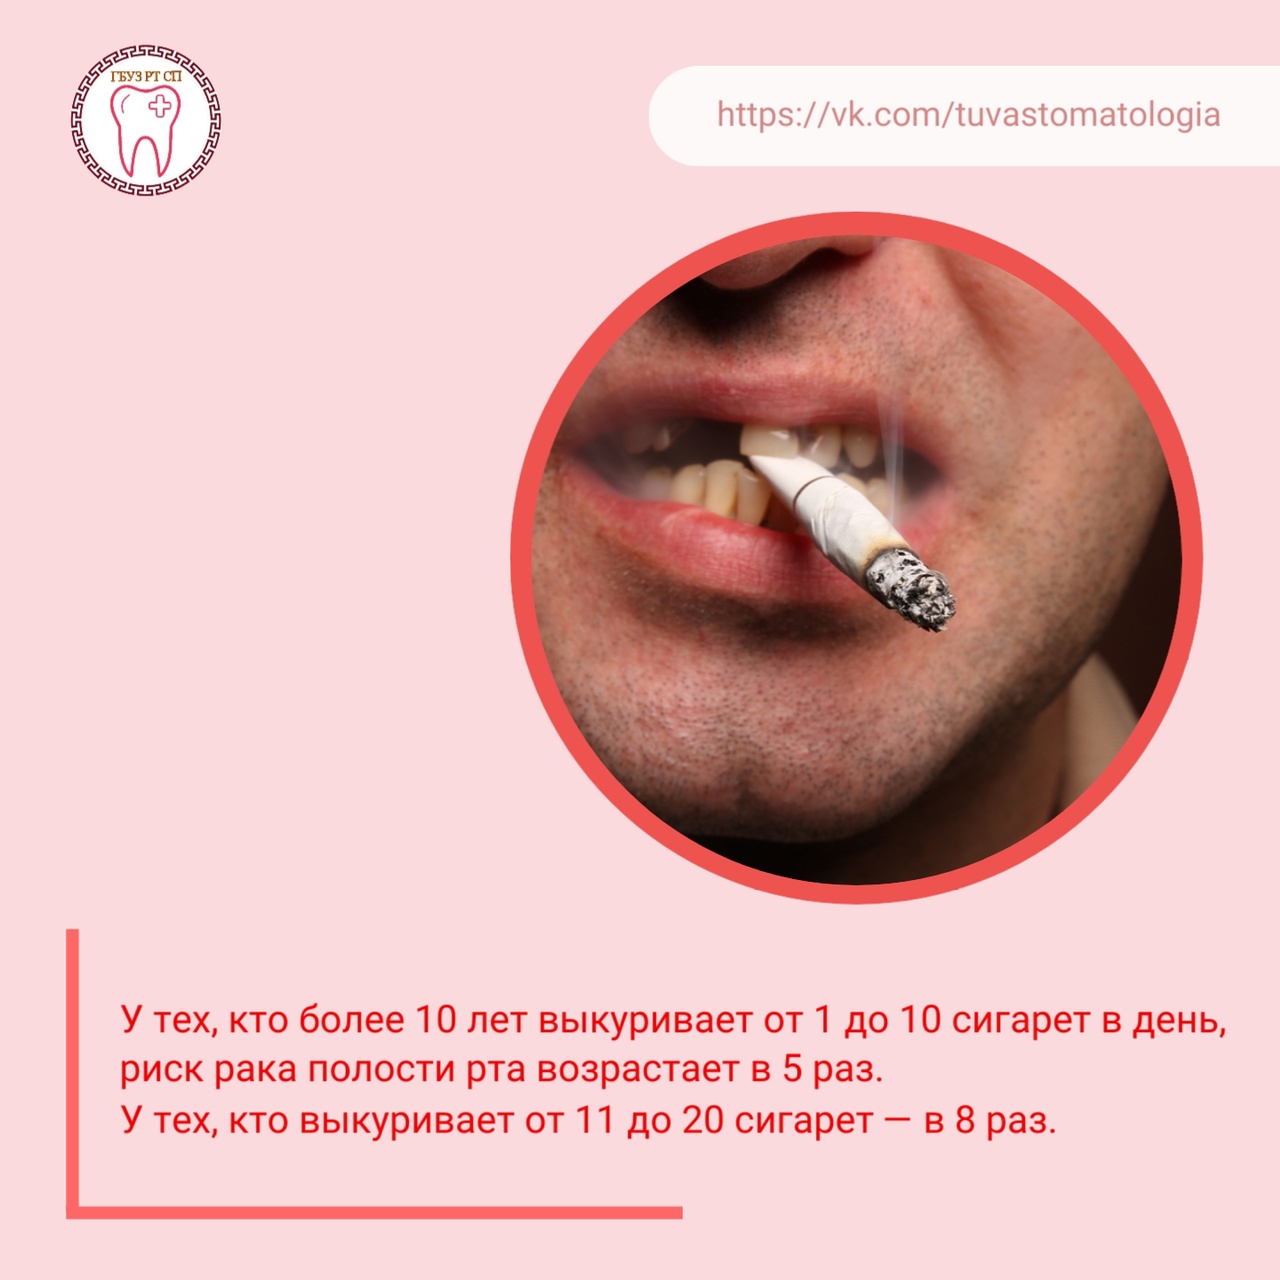 Курение провоцирует рак полости рта